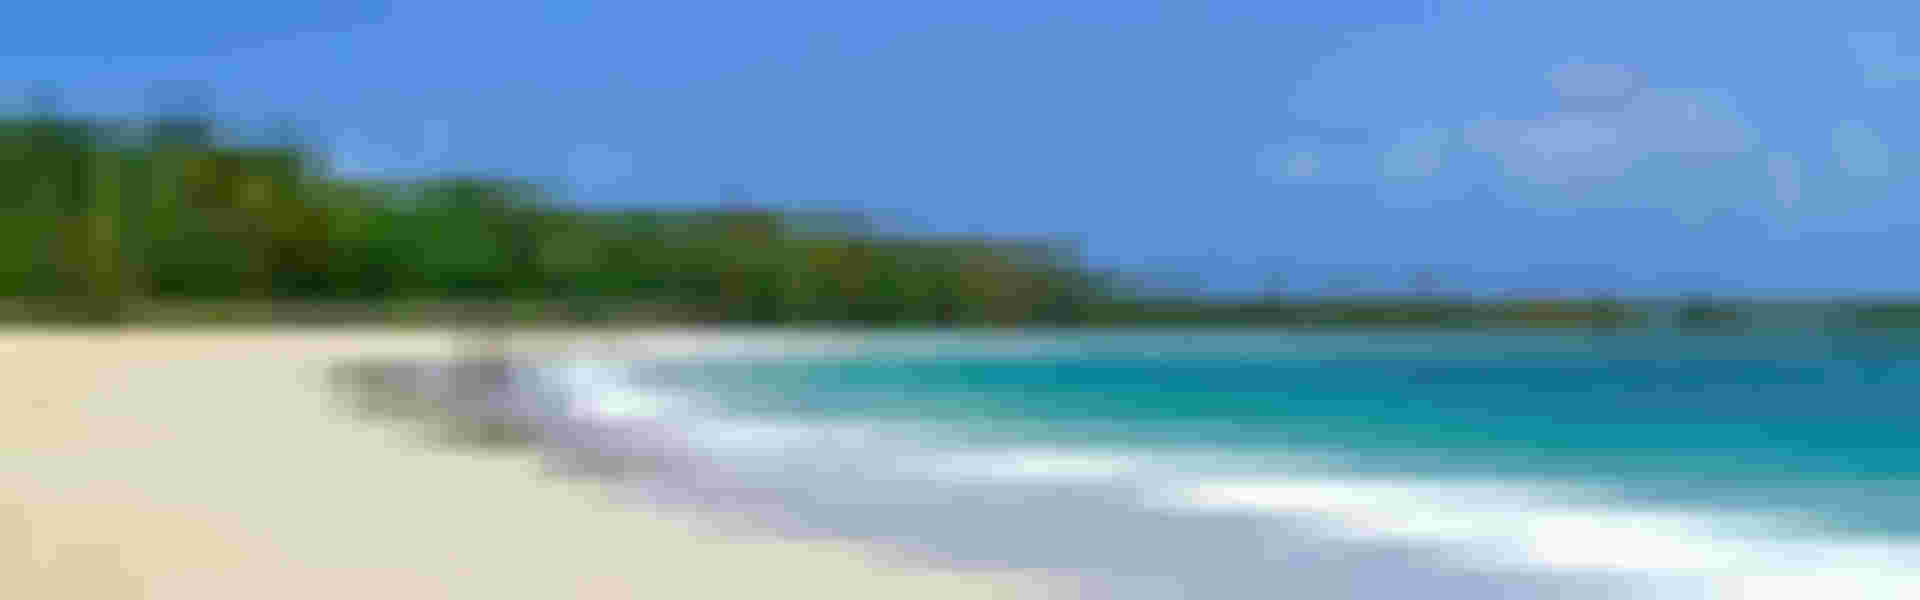 Ferienwohnung oder Ferienhaus in Turks- und Caicosinseln mieten